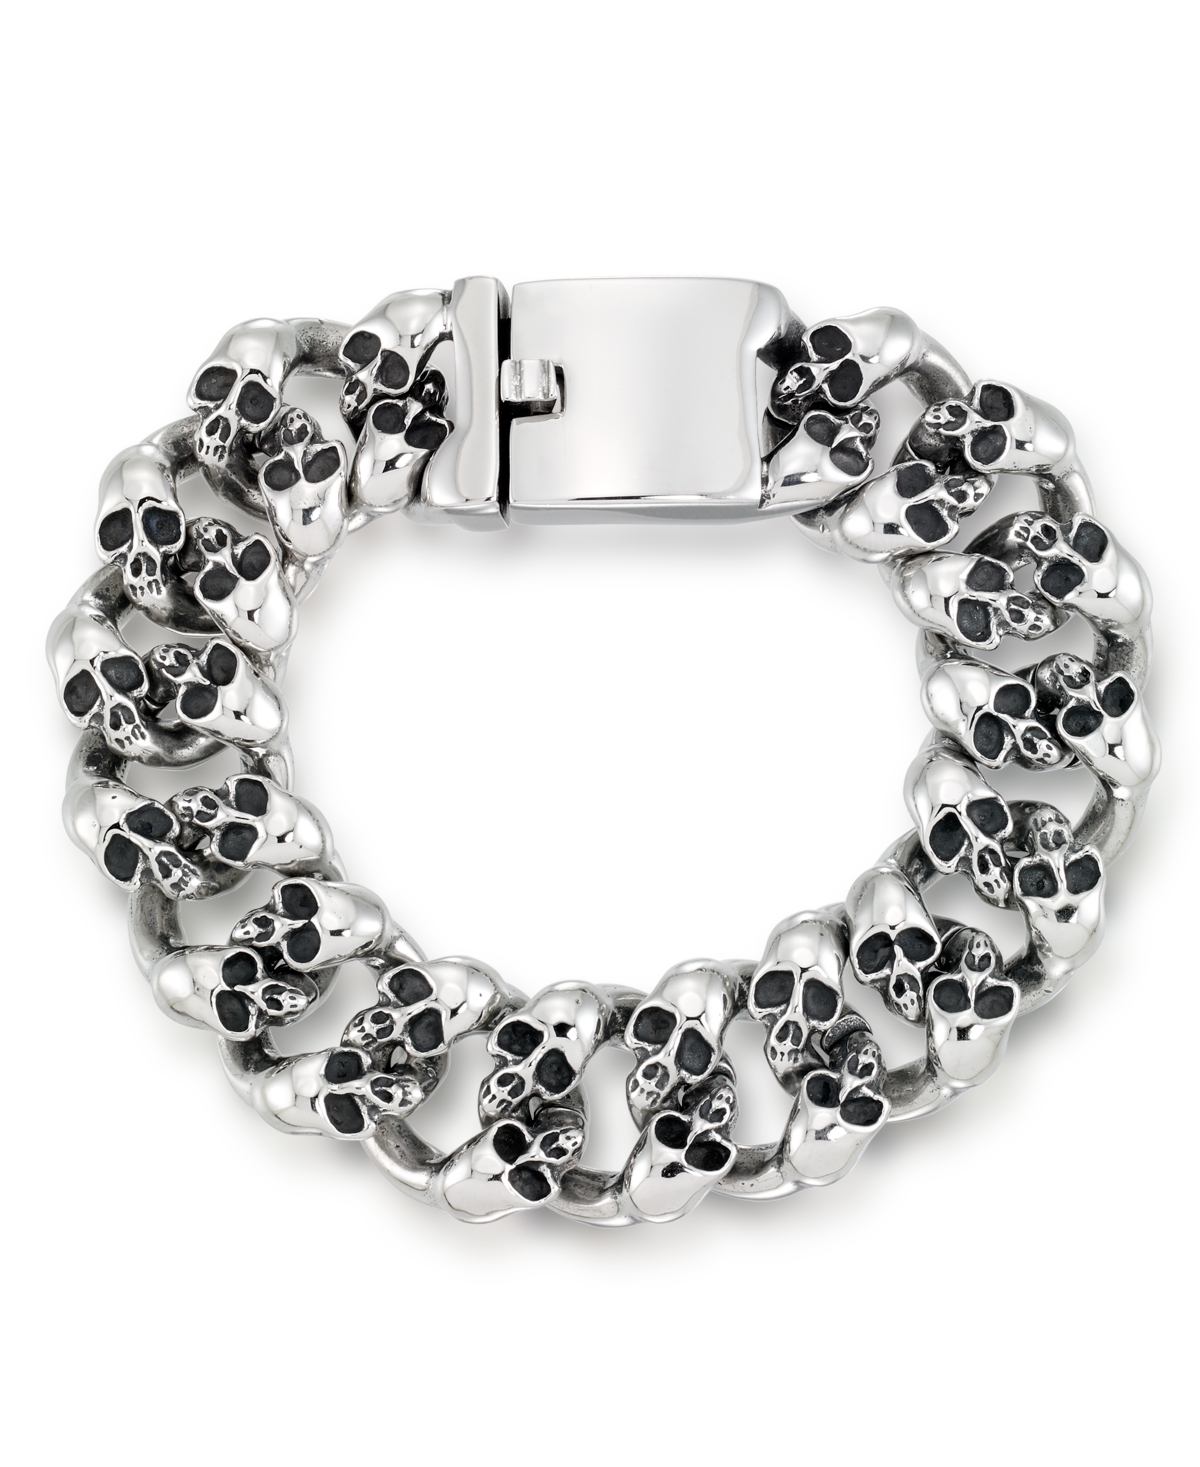 Men's Multi Skull Link Bracelet in Stainless Steel - Stainless Steel